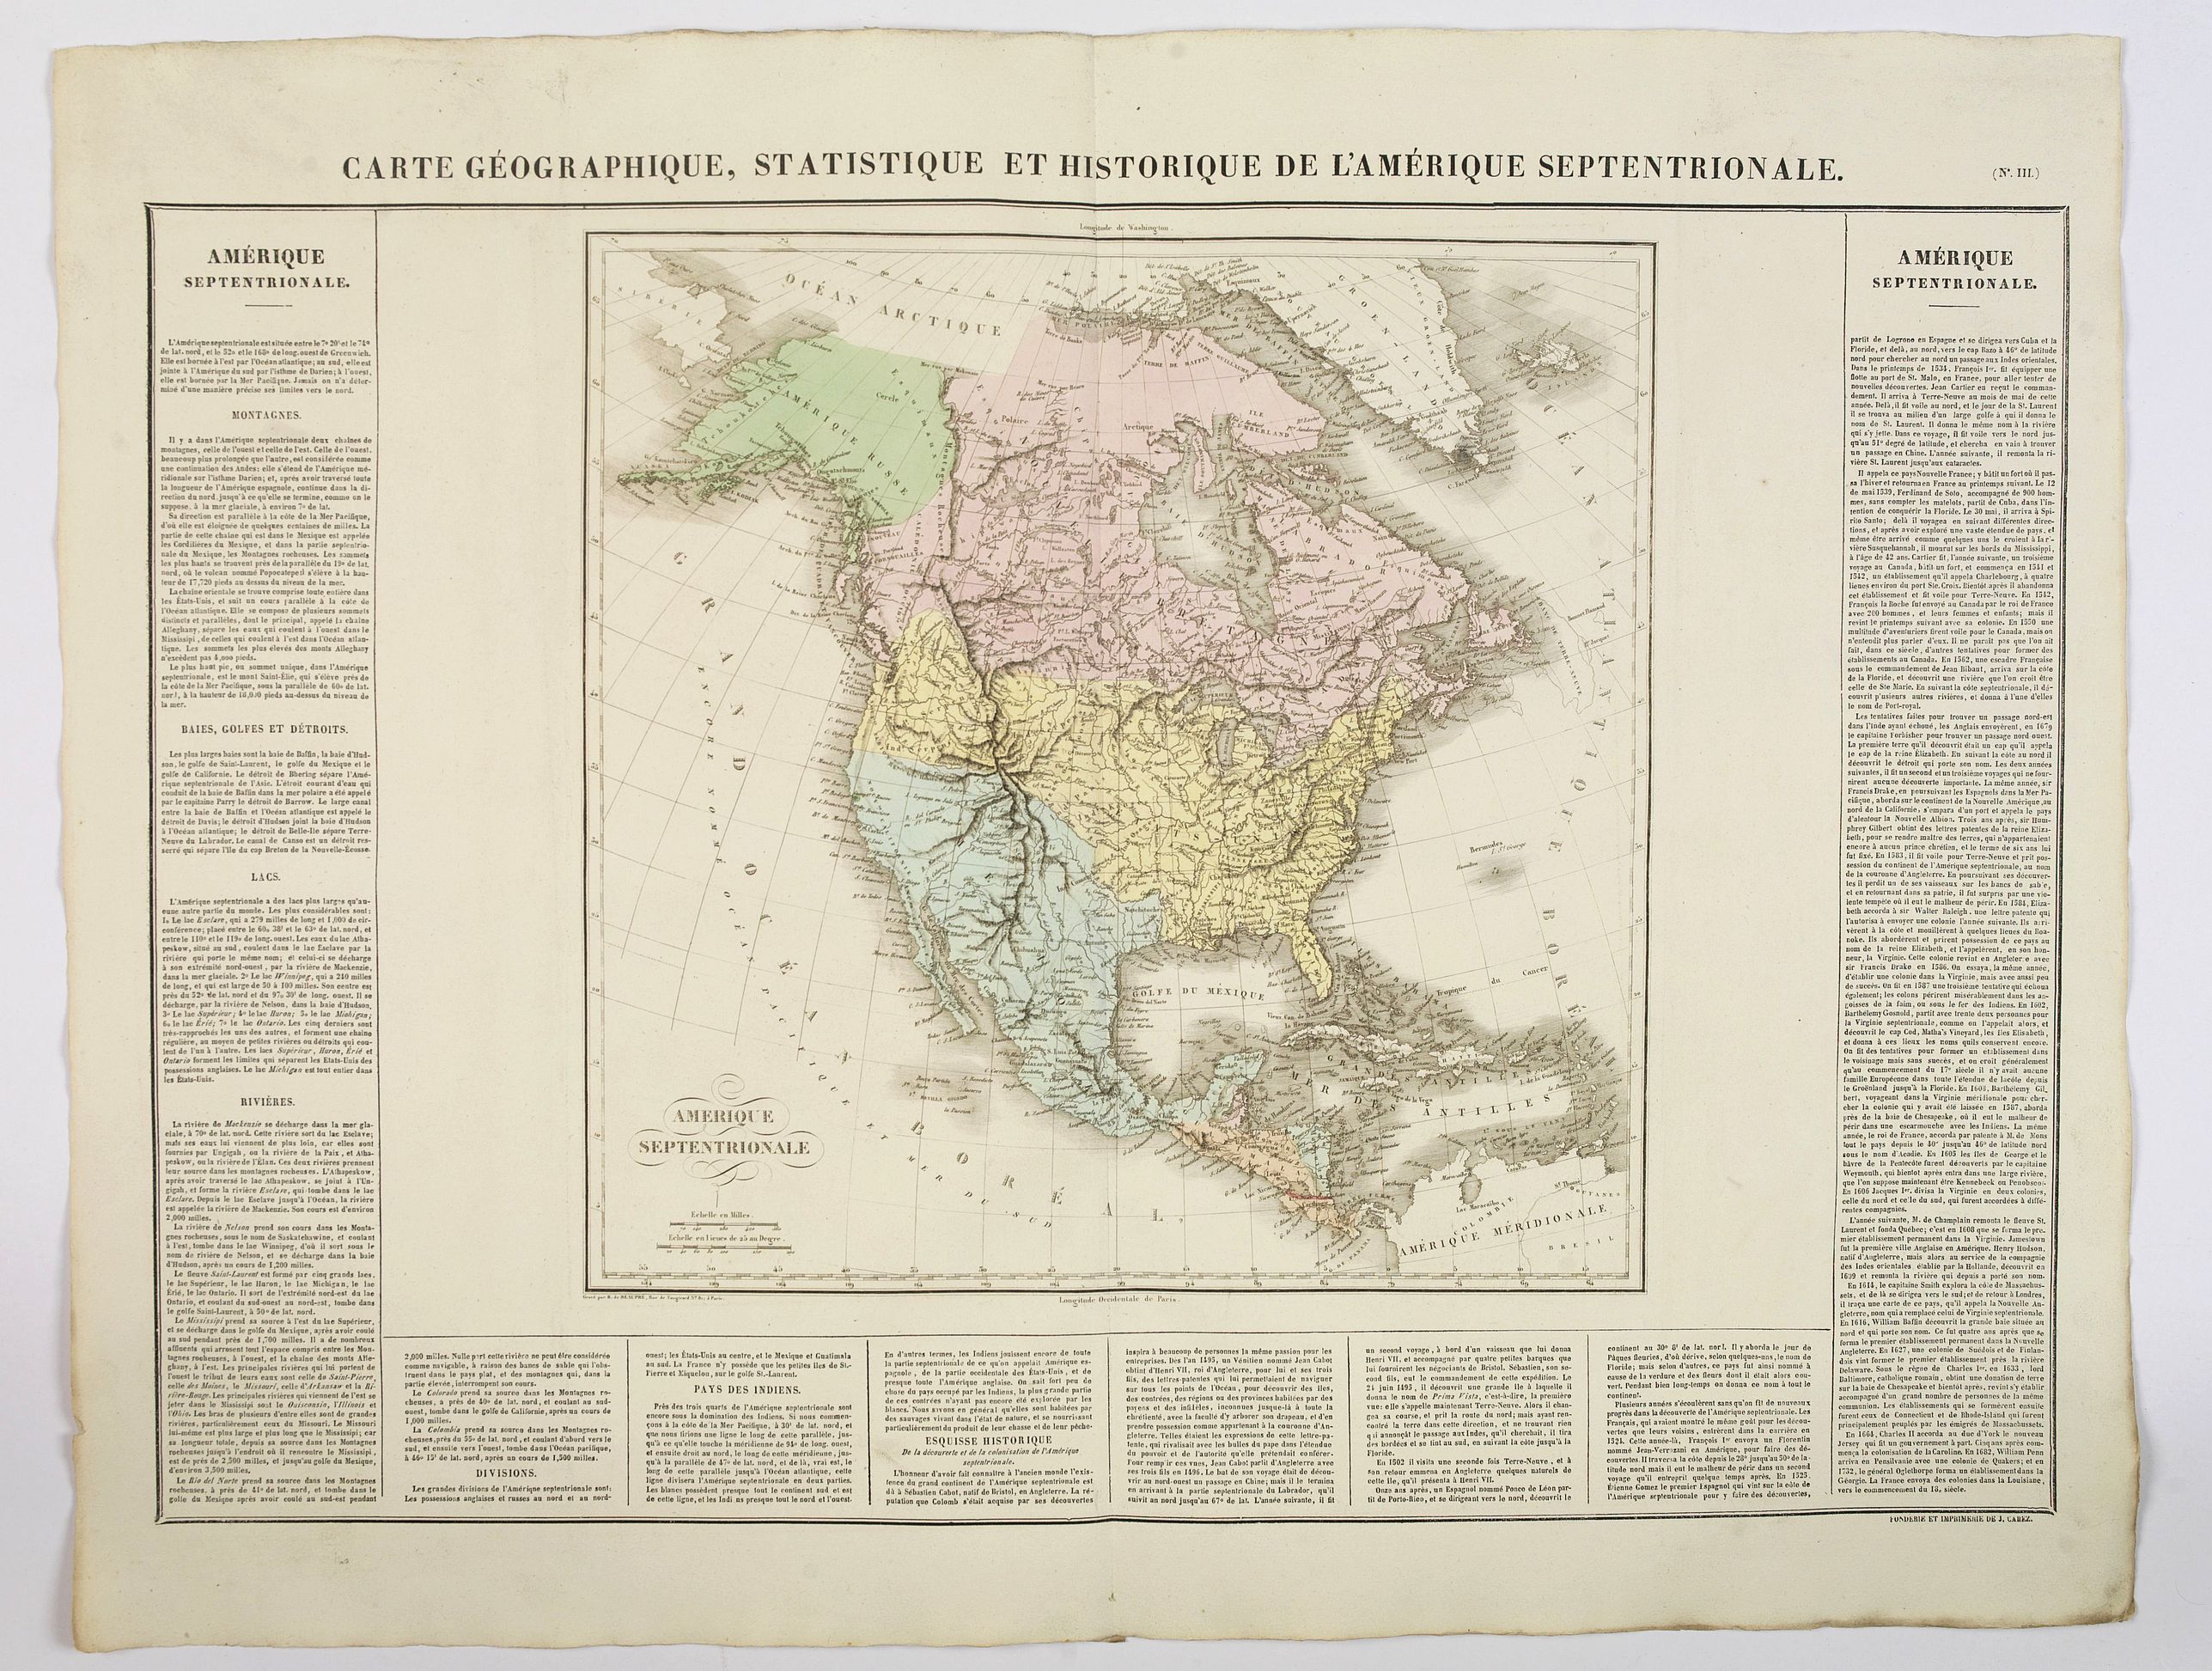 Carte Gographique, Statistique et Historique L'Amerique Septentrionale